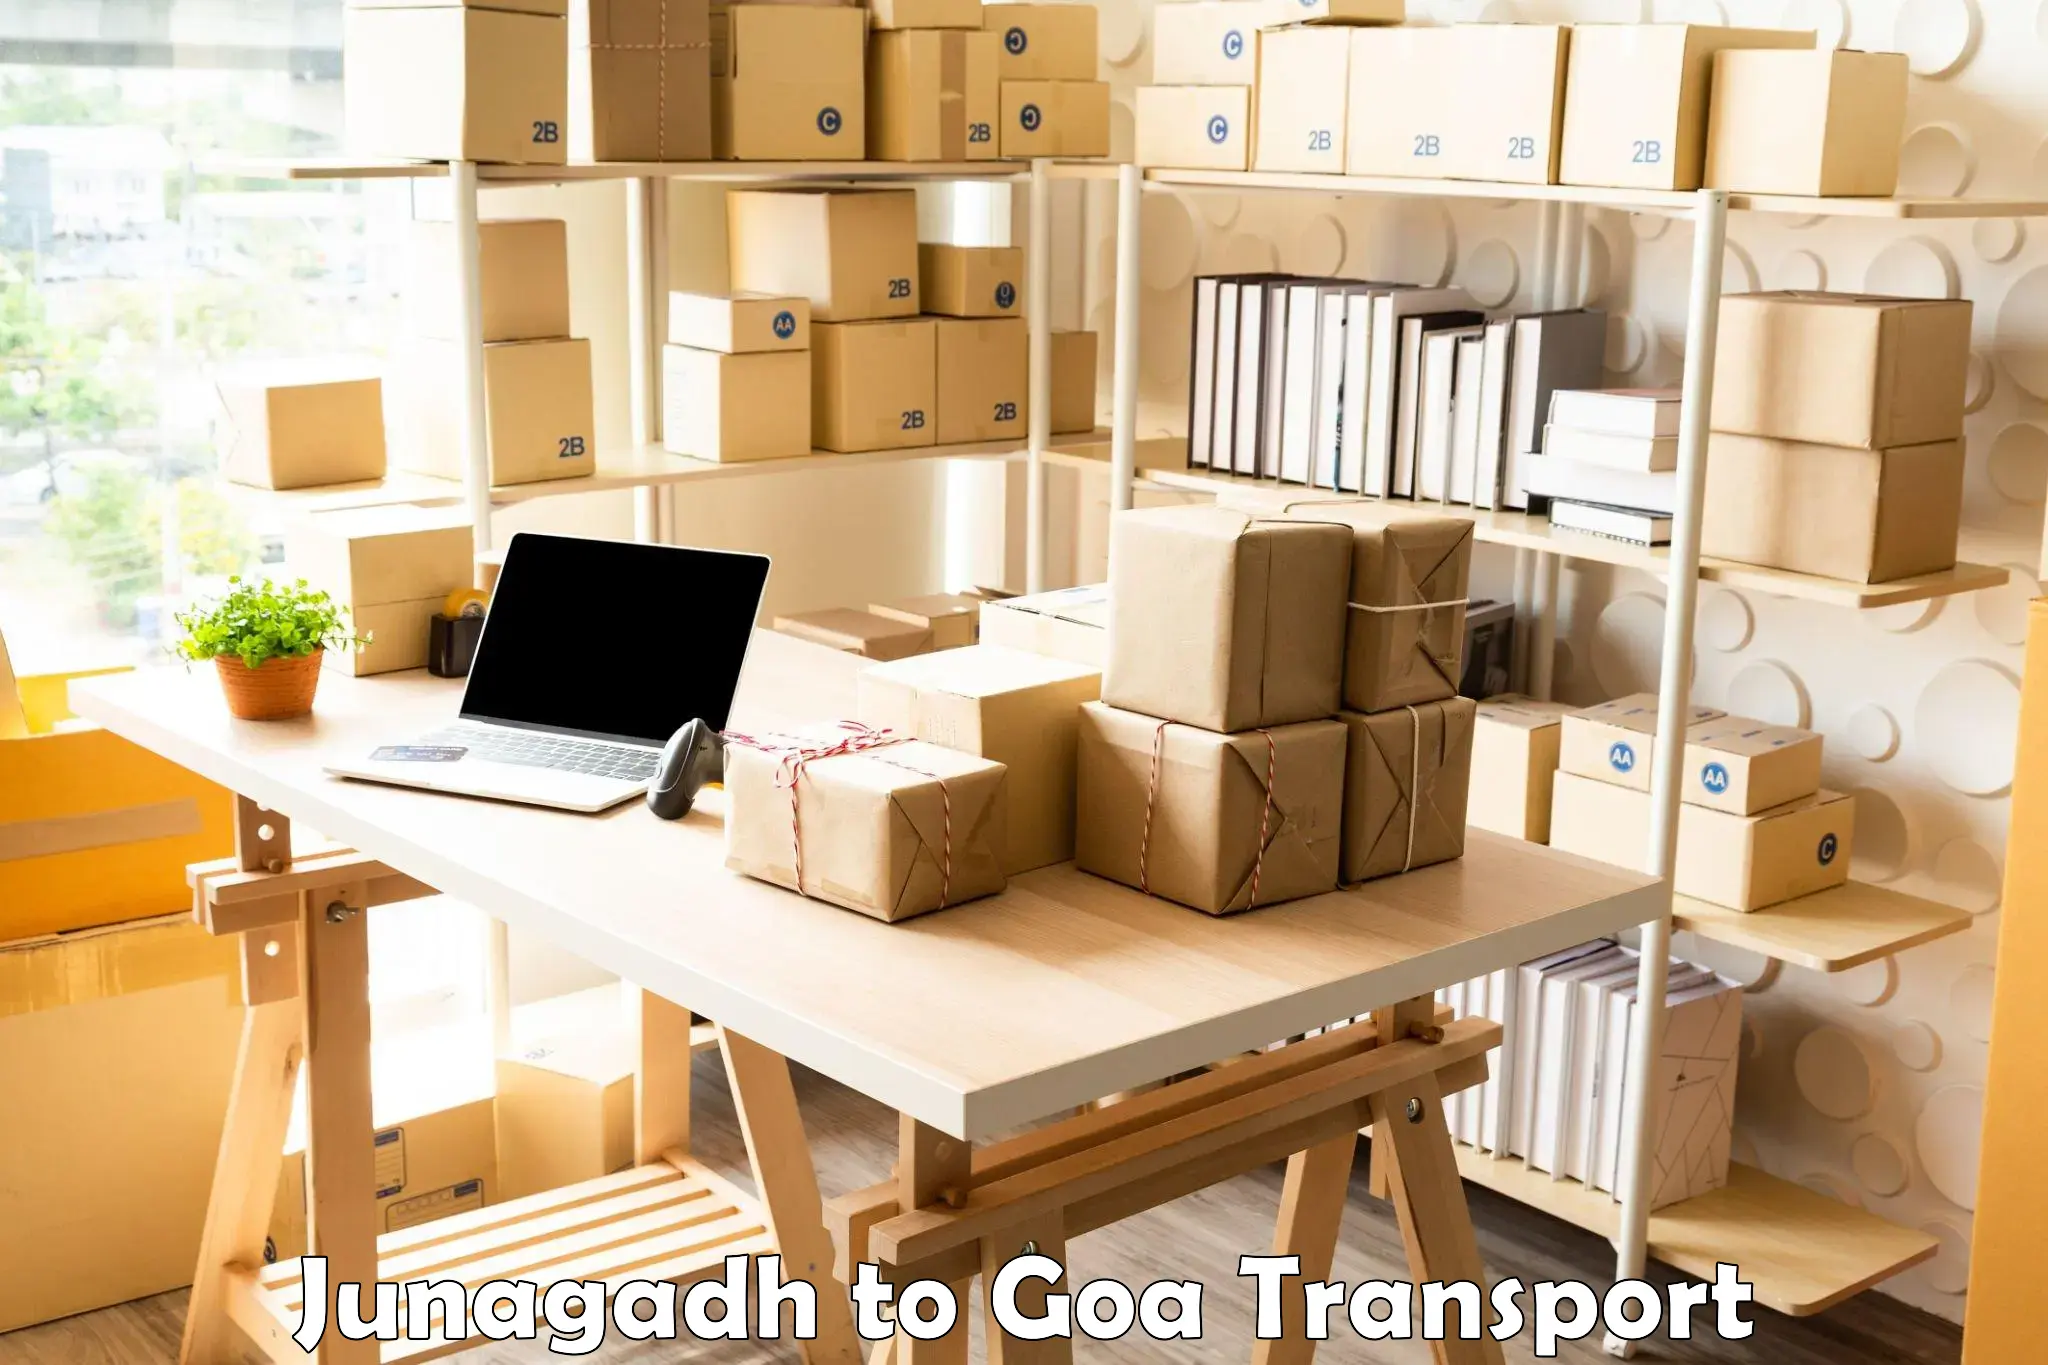 Logistics transportation services Junagadh to Panaji